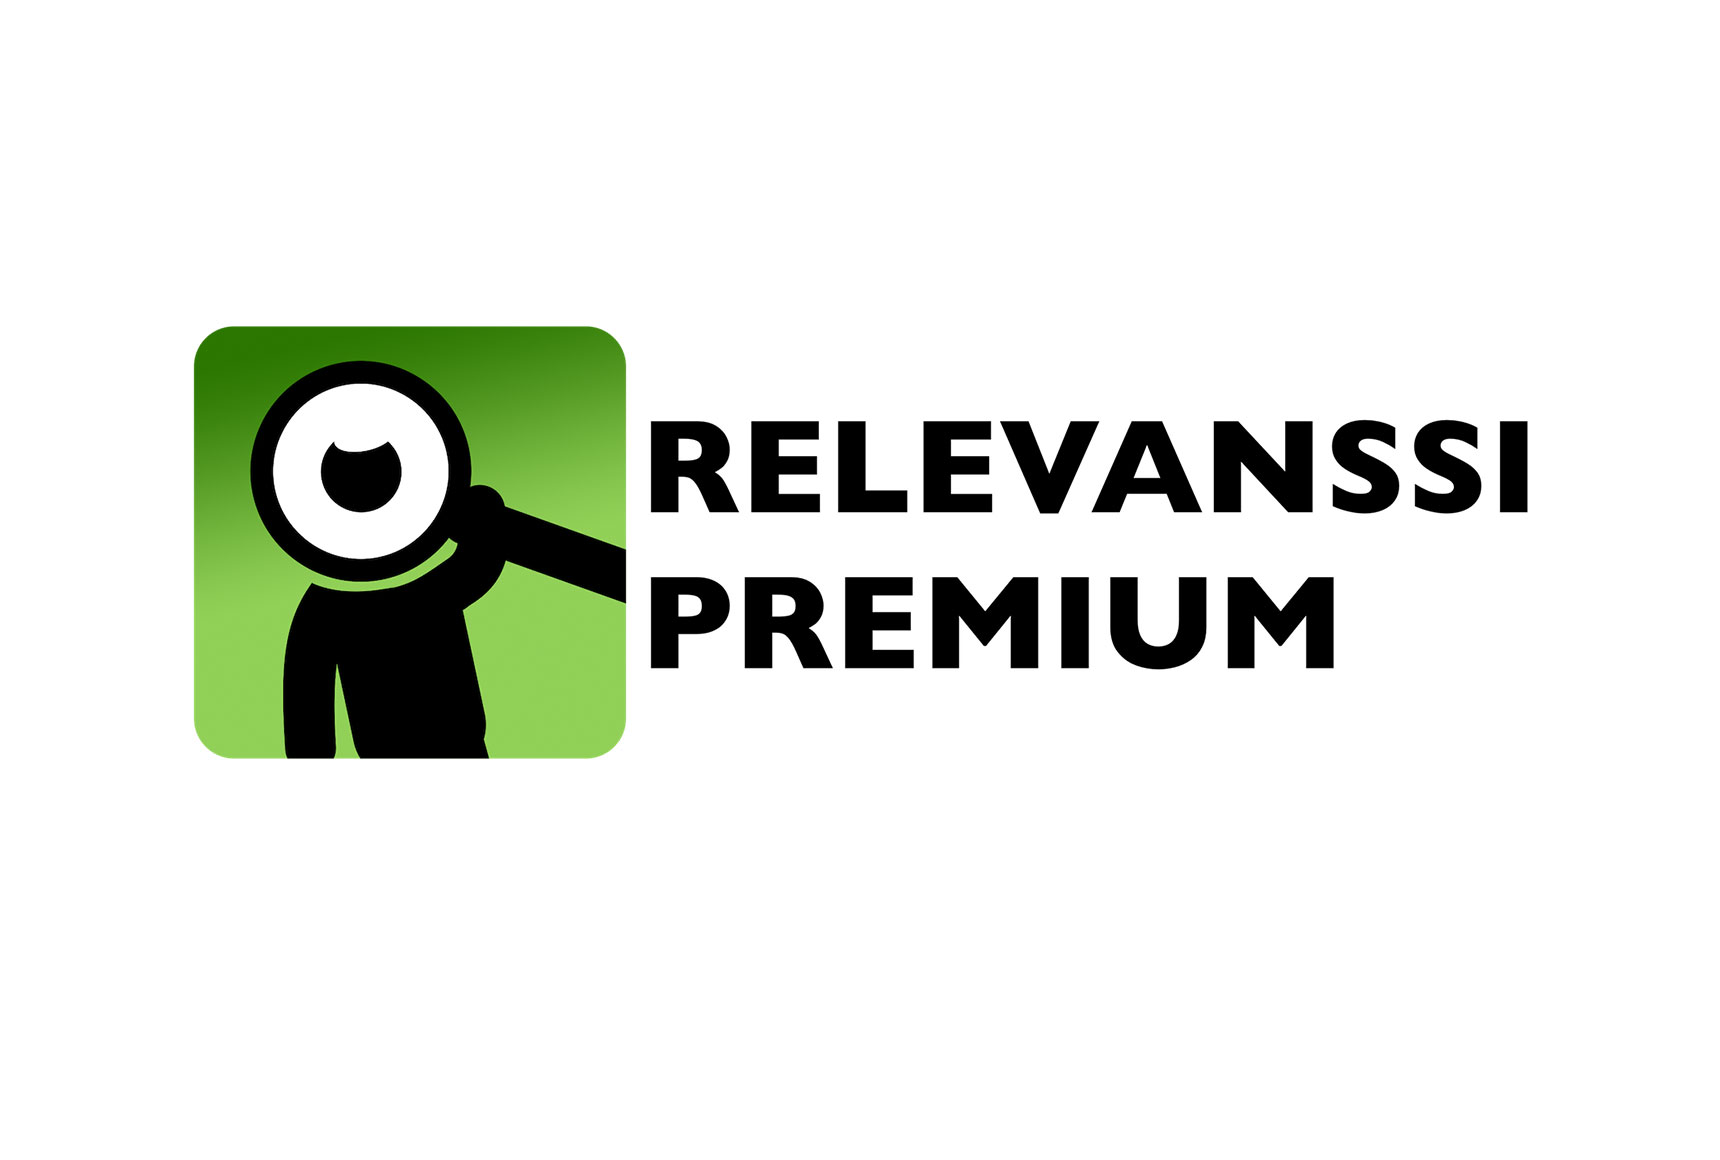 Relevanssi Premium - Search Plugin for WordPress - Premium Plugins